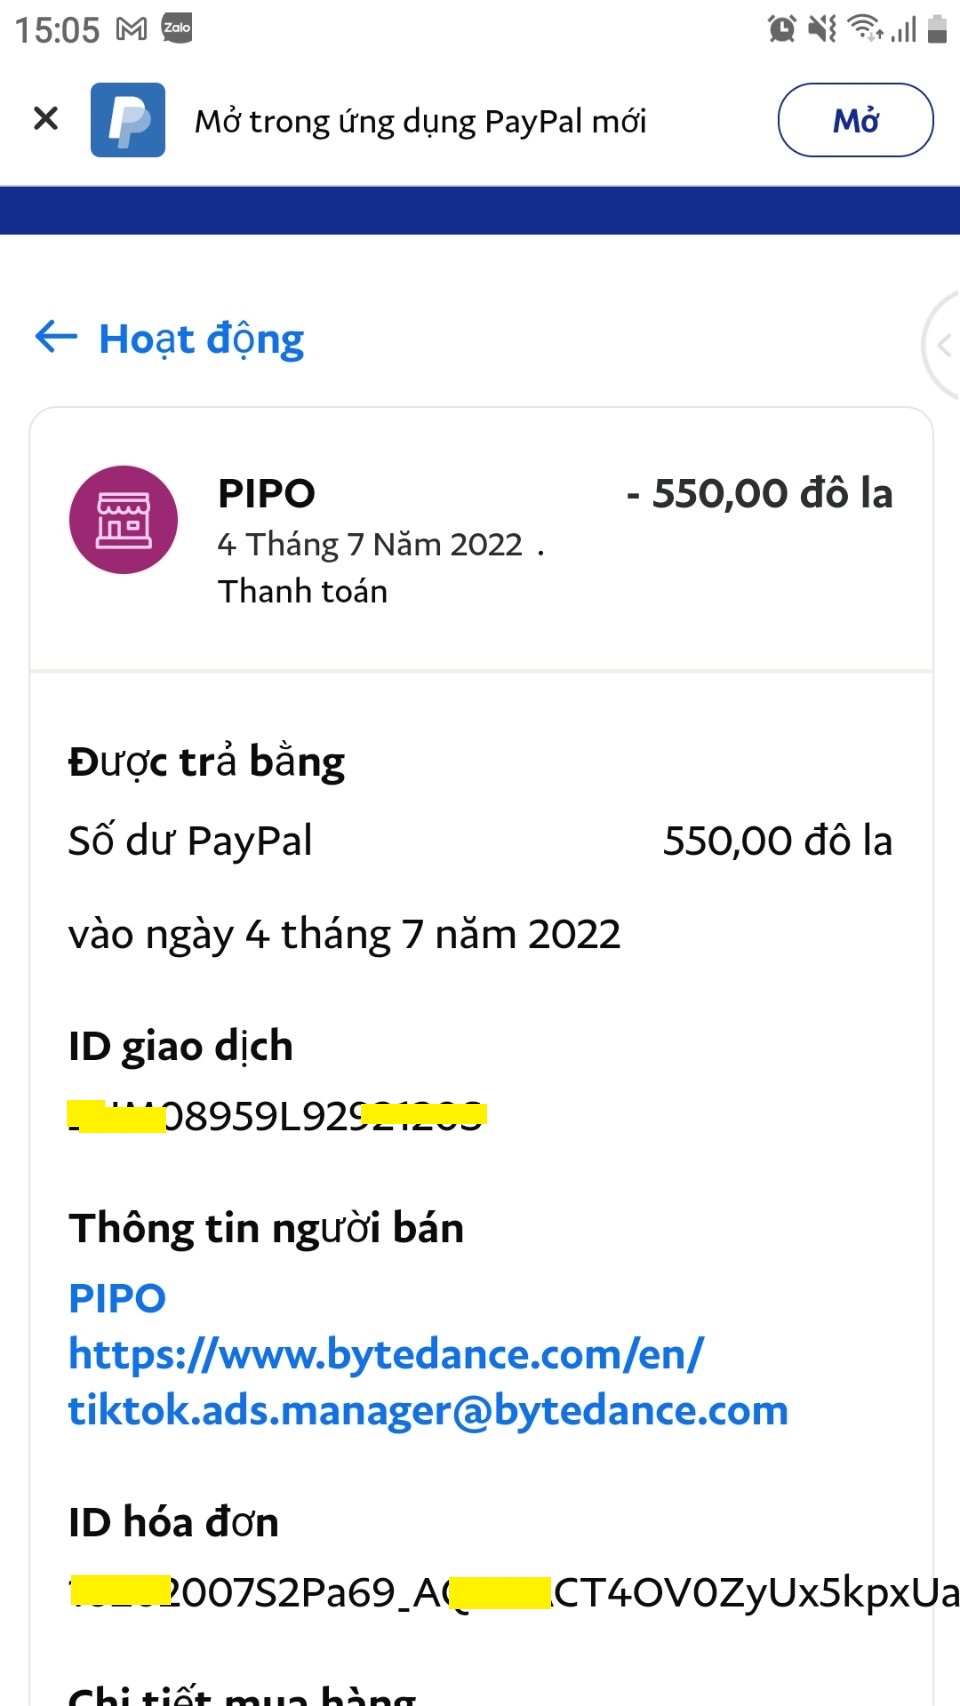 Dịch vụ nạp tiền Tiktok Ads giá rẻ bằng Paypal